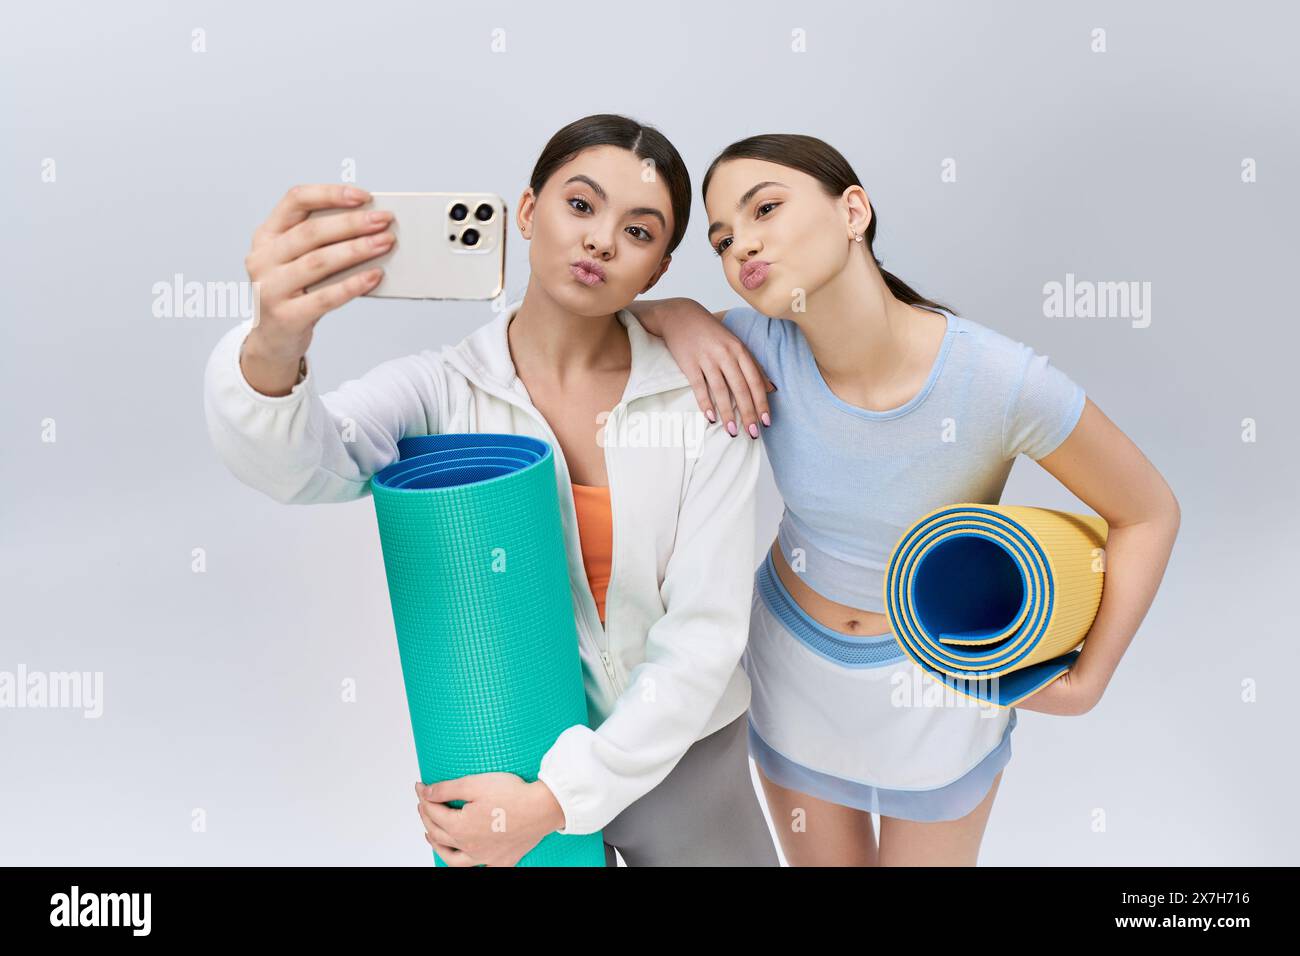 Deux jolis amis adolescents, aux cheveux bruns et aux vêtements de sport, capturent un selfie avec un tapis de yoga dans un cadre de studio. Banque D'Images